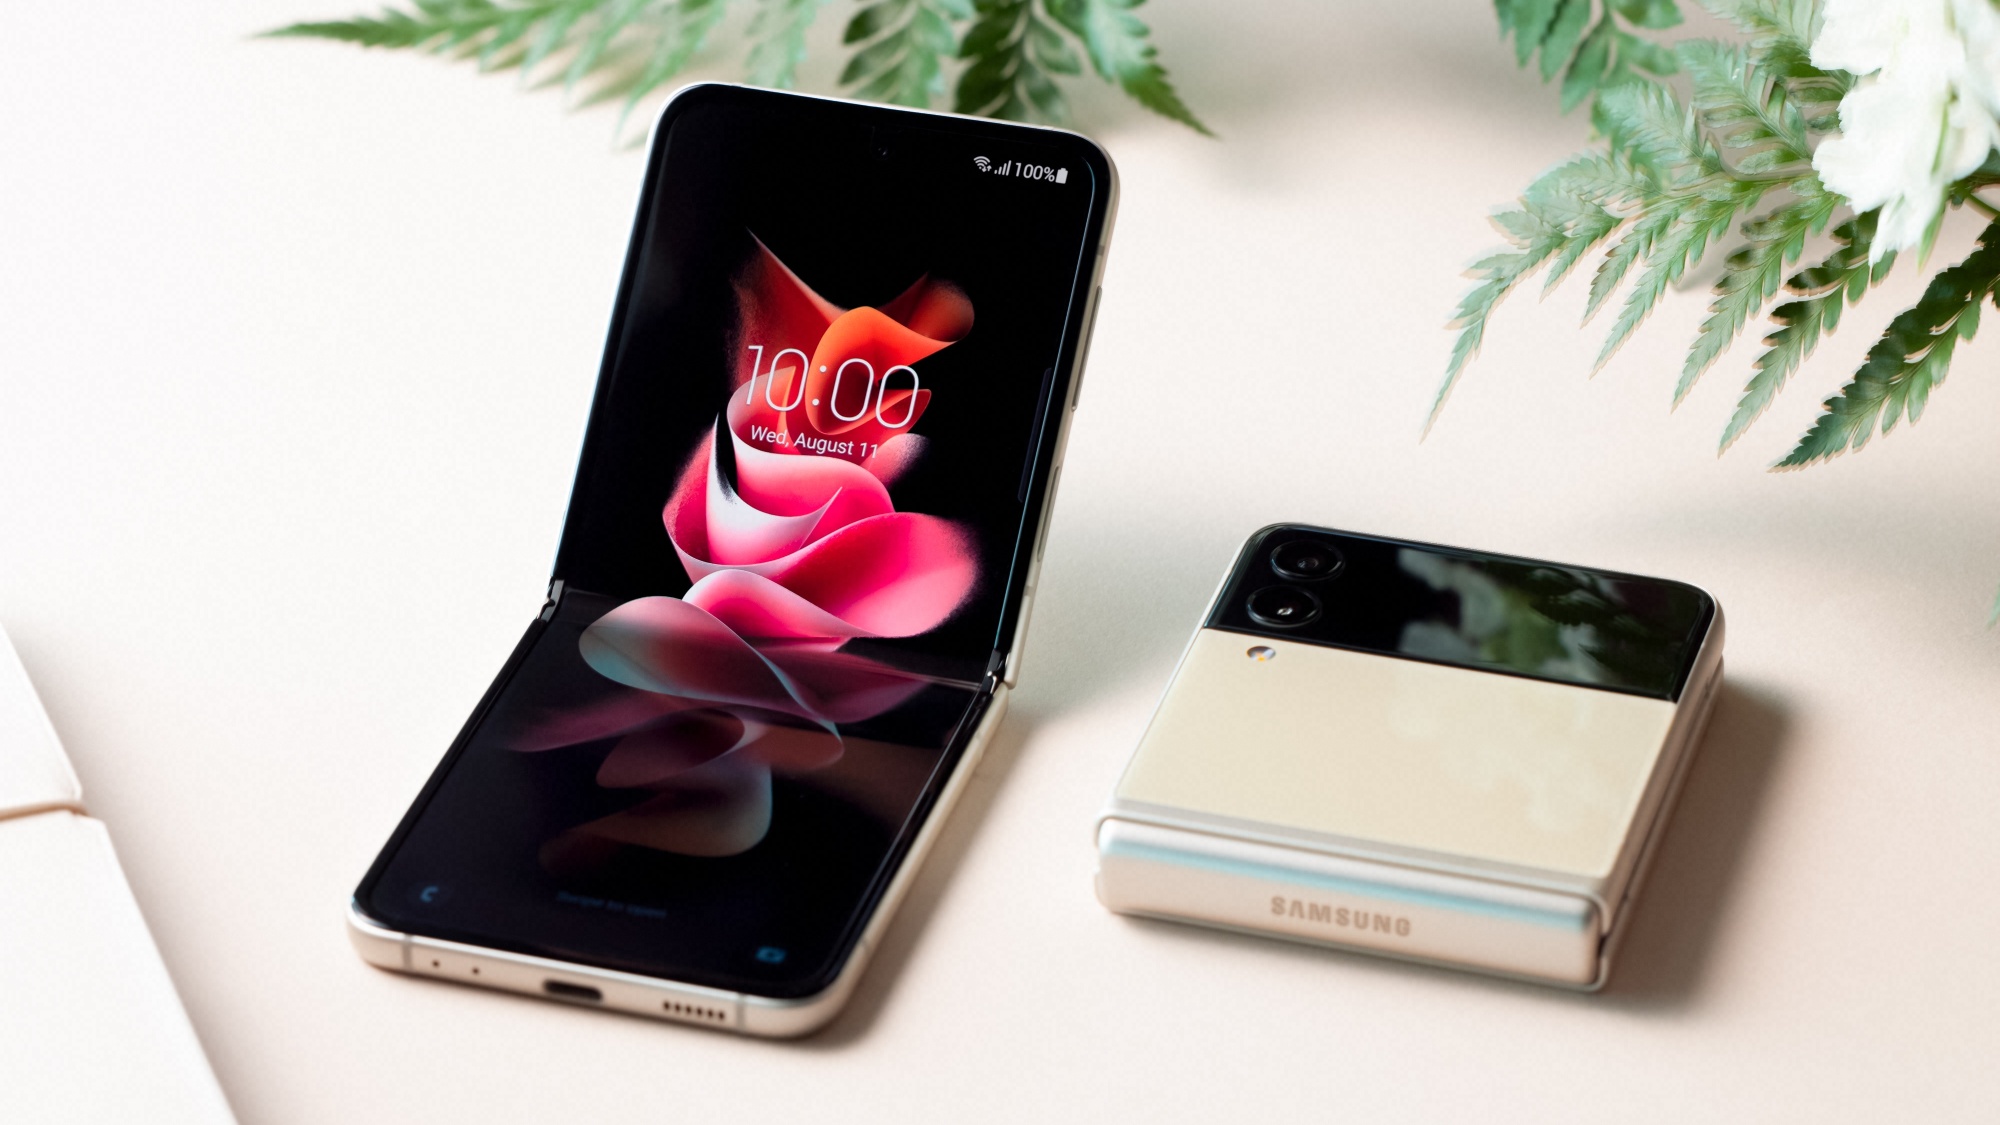 Samsung apresenta o Galaxy Fold, celular dobrável e com 6 câmeras